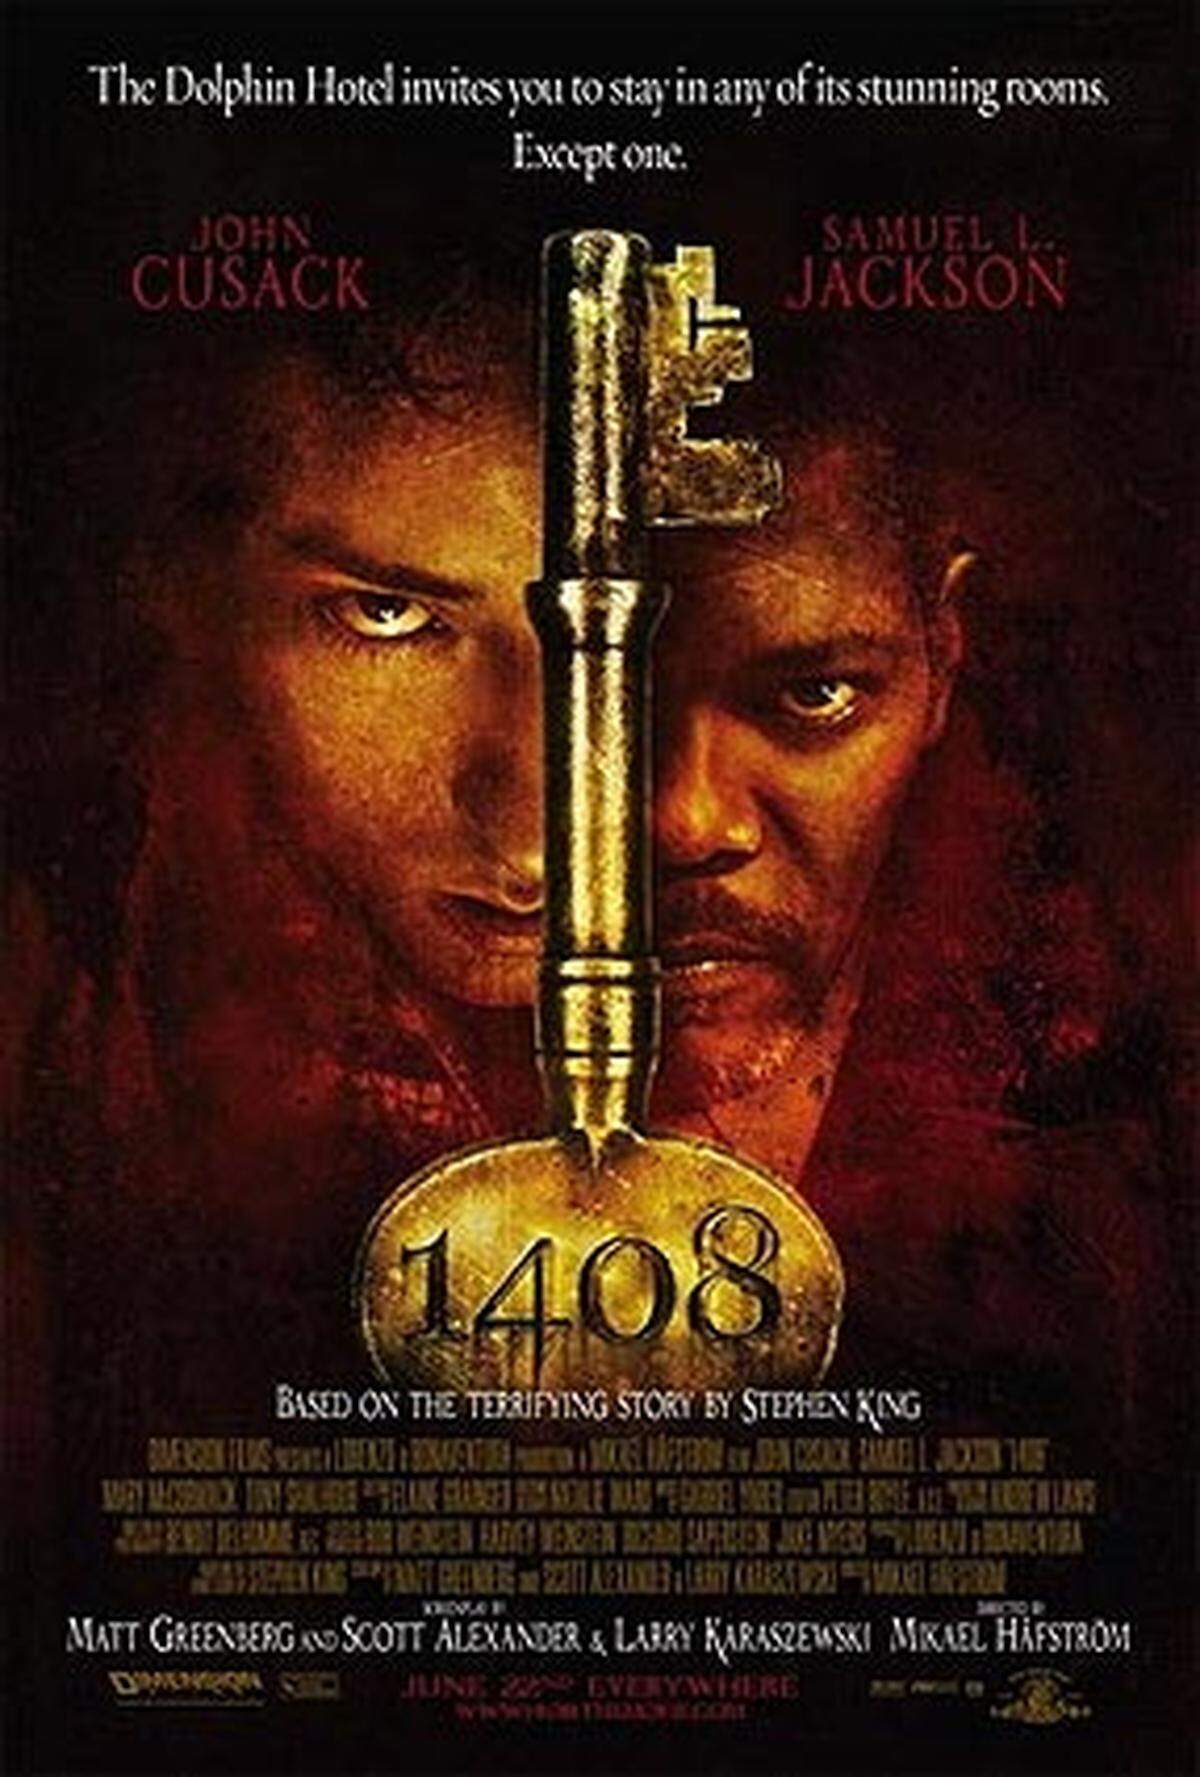 Die jüngste Verfilmung eines King-Werkes ist "Zimmer 1408" mit John Cusack und Samuel L. Jackson.